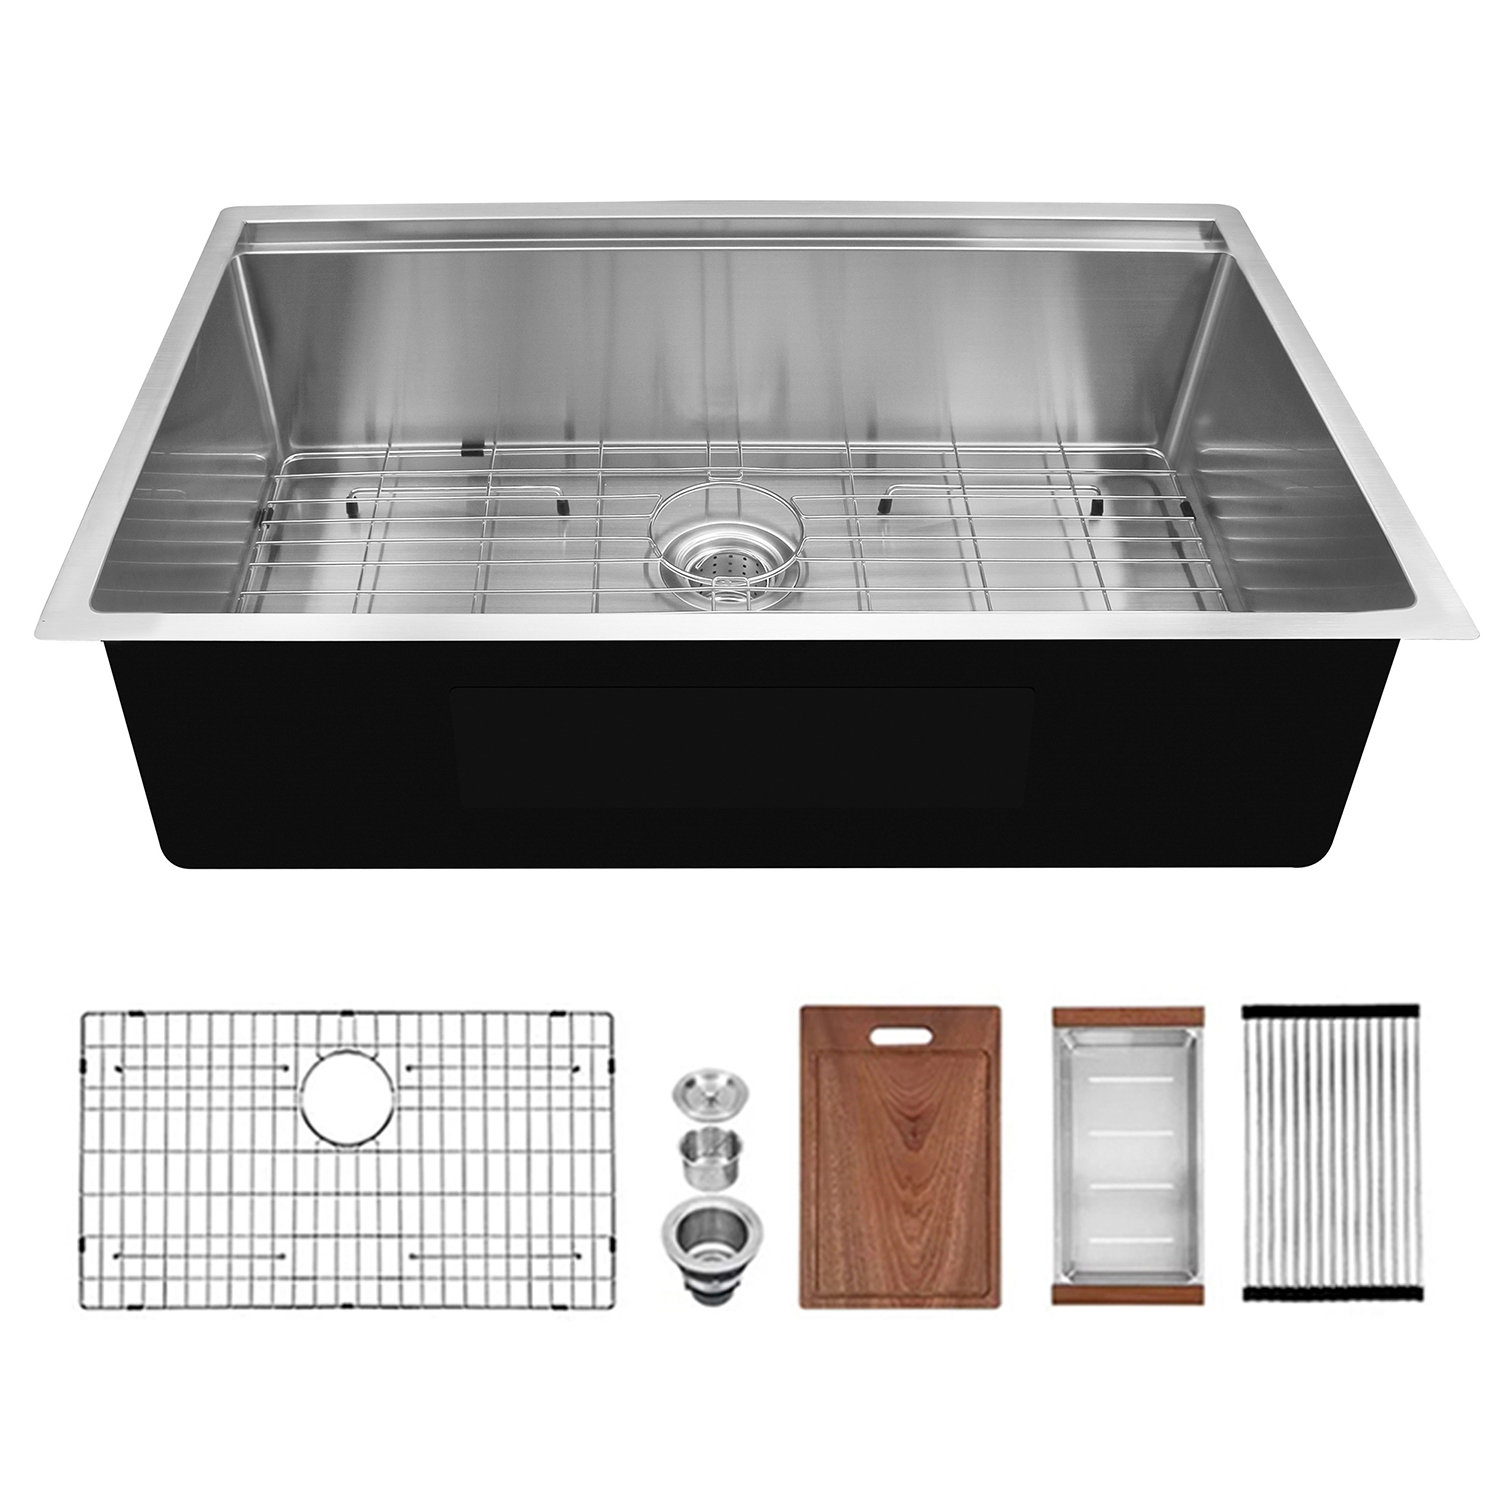 ALWEN 30X19 inch Workstation Ledge kitchen Sink Undermount Kitchen Sink 304 Stainless Steel Single Bowl - 1